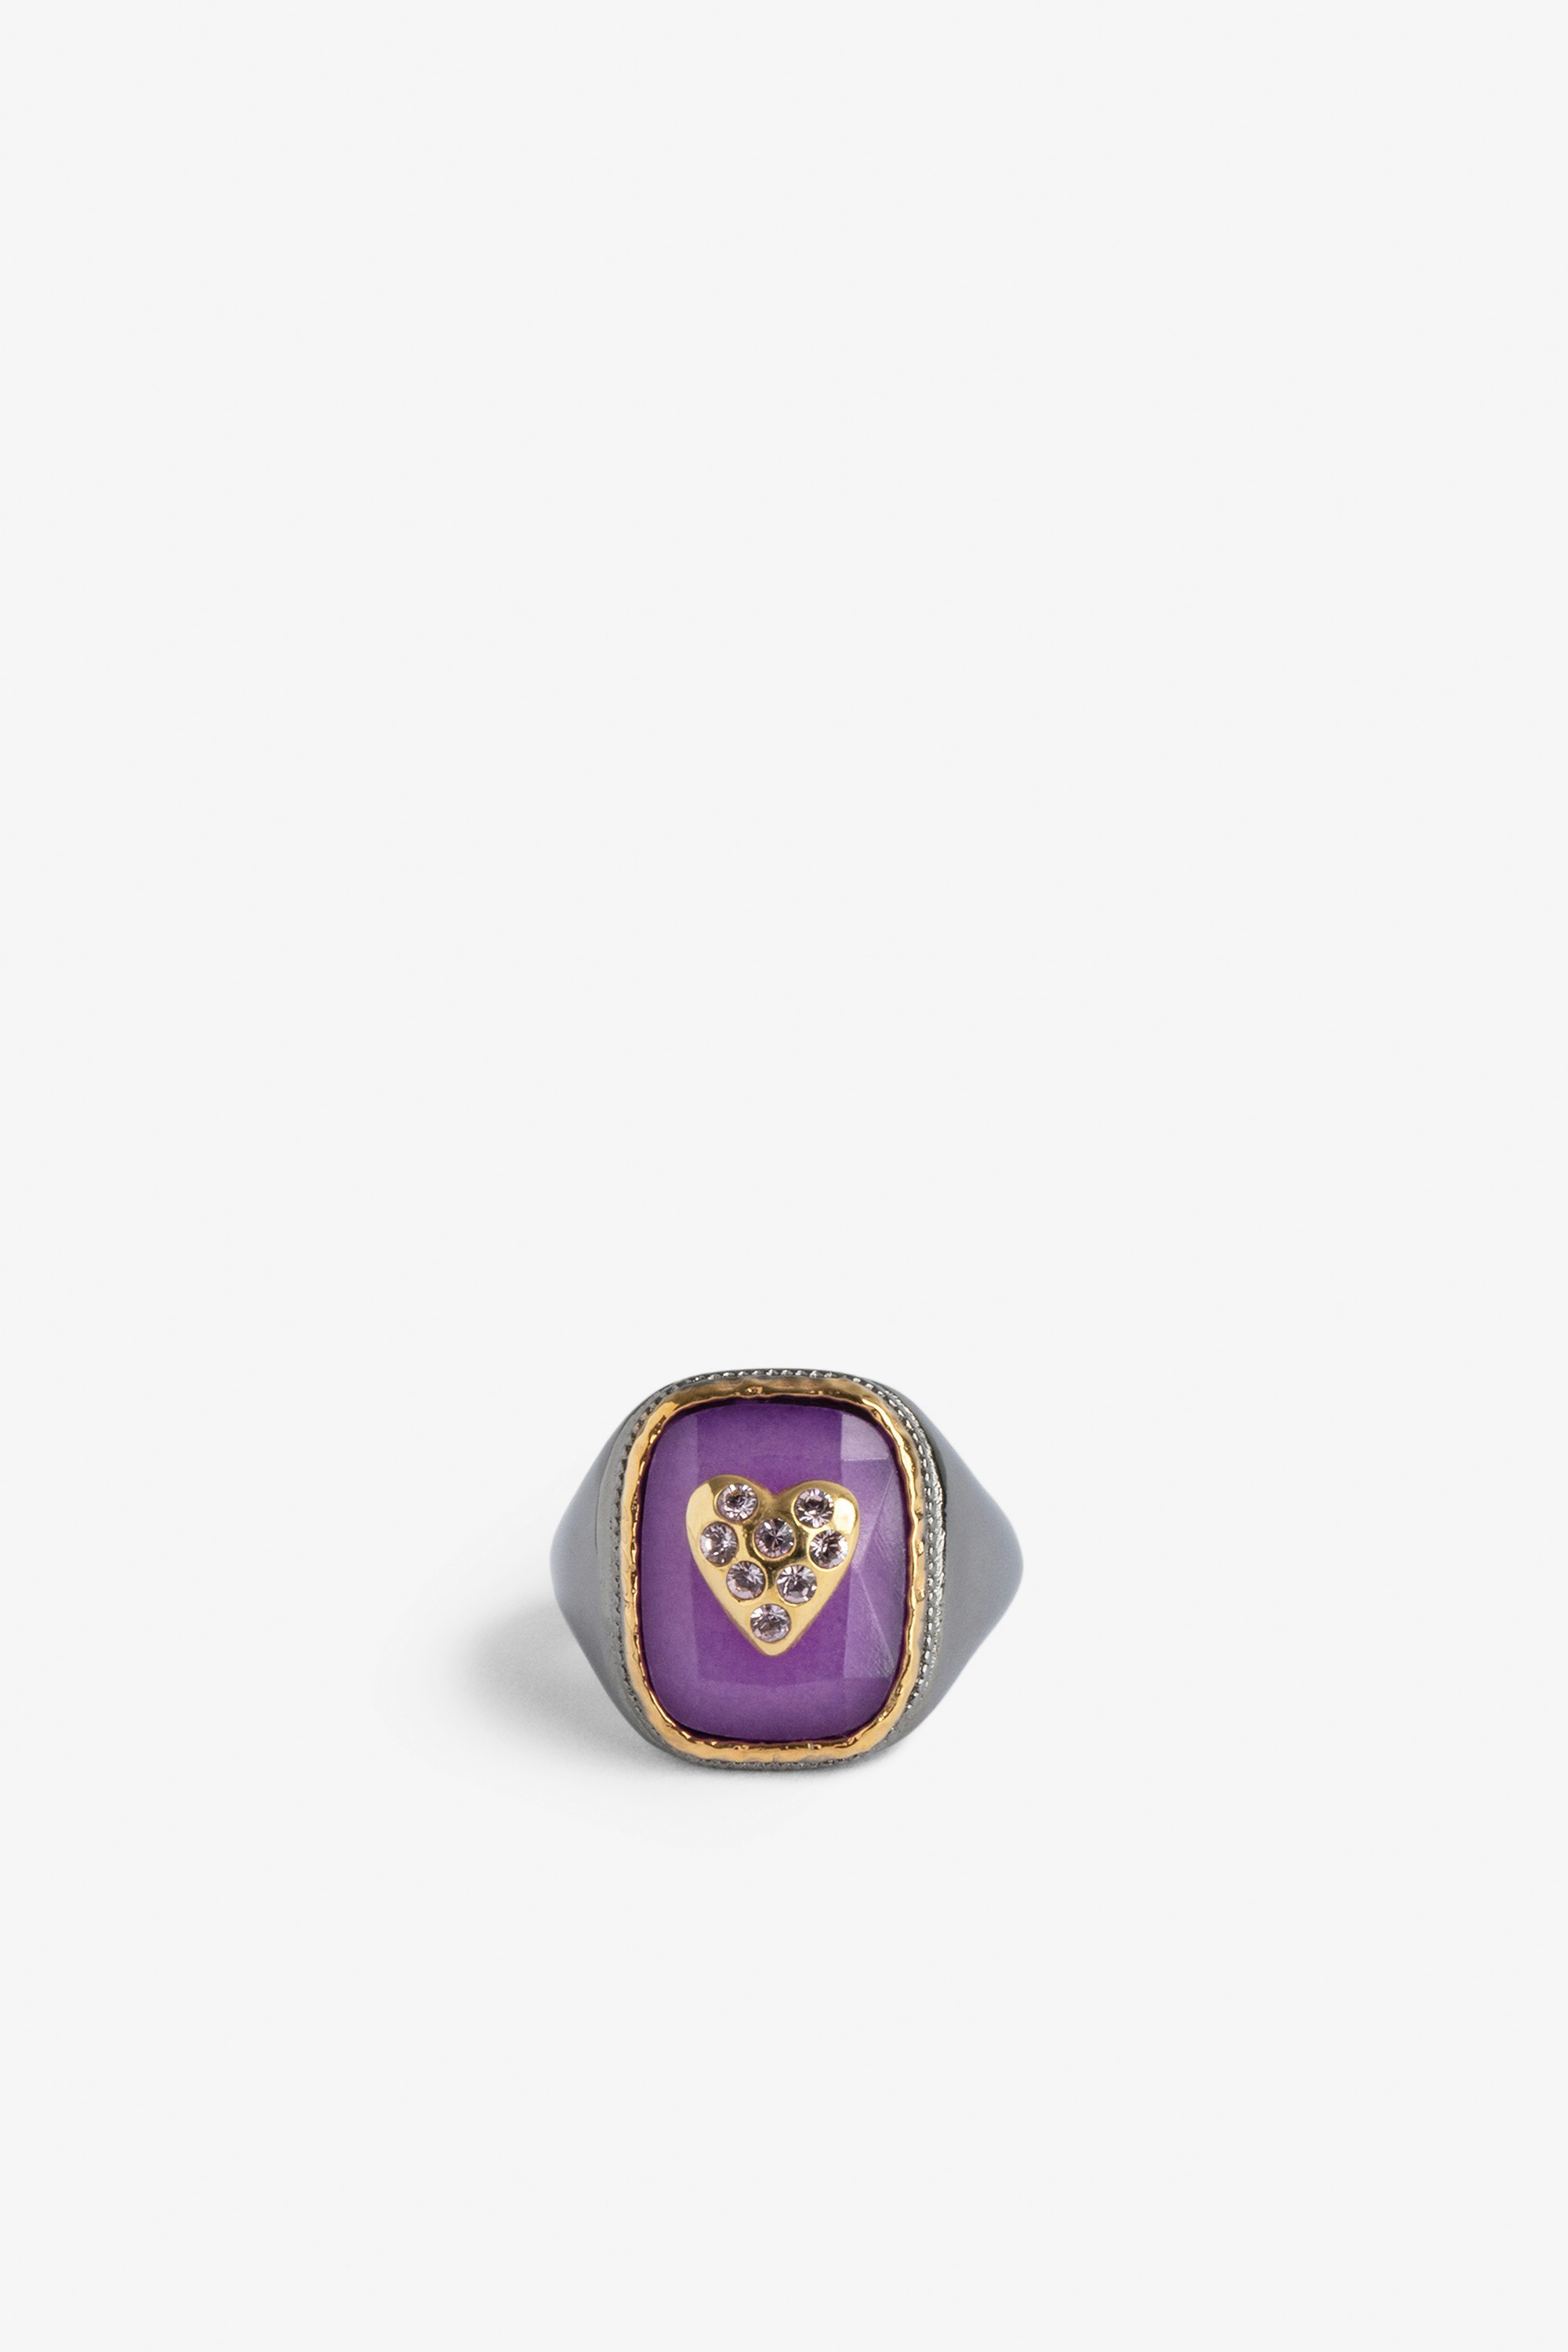 Siegelring Heart Siegelring mit einem violetten Stein, besetzt mit einem Herz aus goldfarbenem Messing